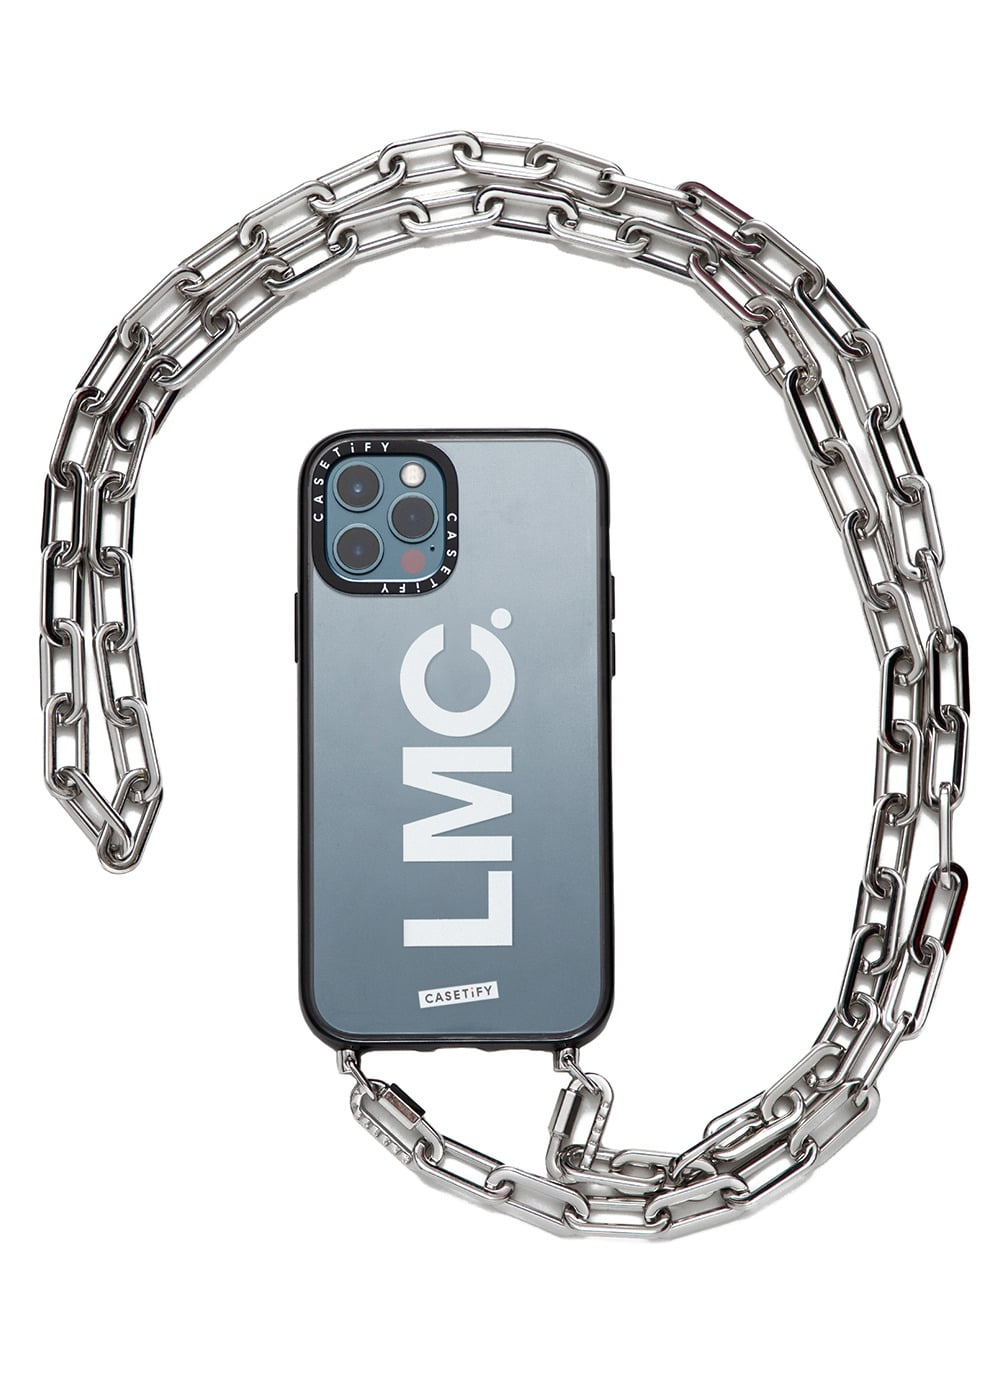 LMC x CASETIFY OG CHAIN SLING CASE white (12 Pro)